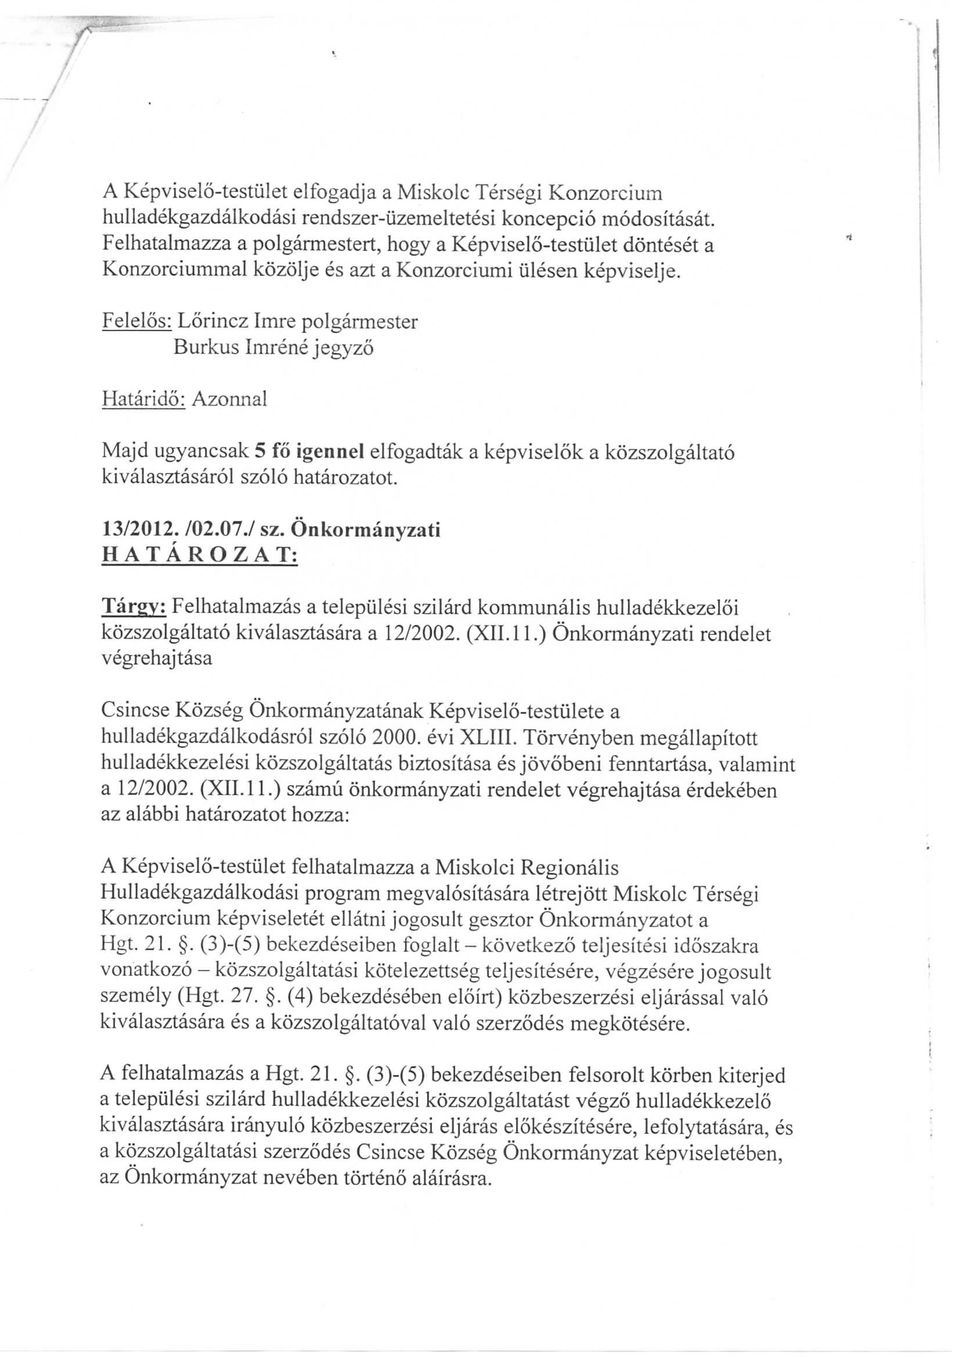 Felelos: Hatarido: Azonnal Majd ugyancsak 5 fo igennel elfogadtak a kepviselok a kozszolgaltato kivalasztasarol szolo hatarozatot. 13/2012. /02.07./ sz.